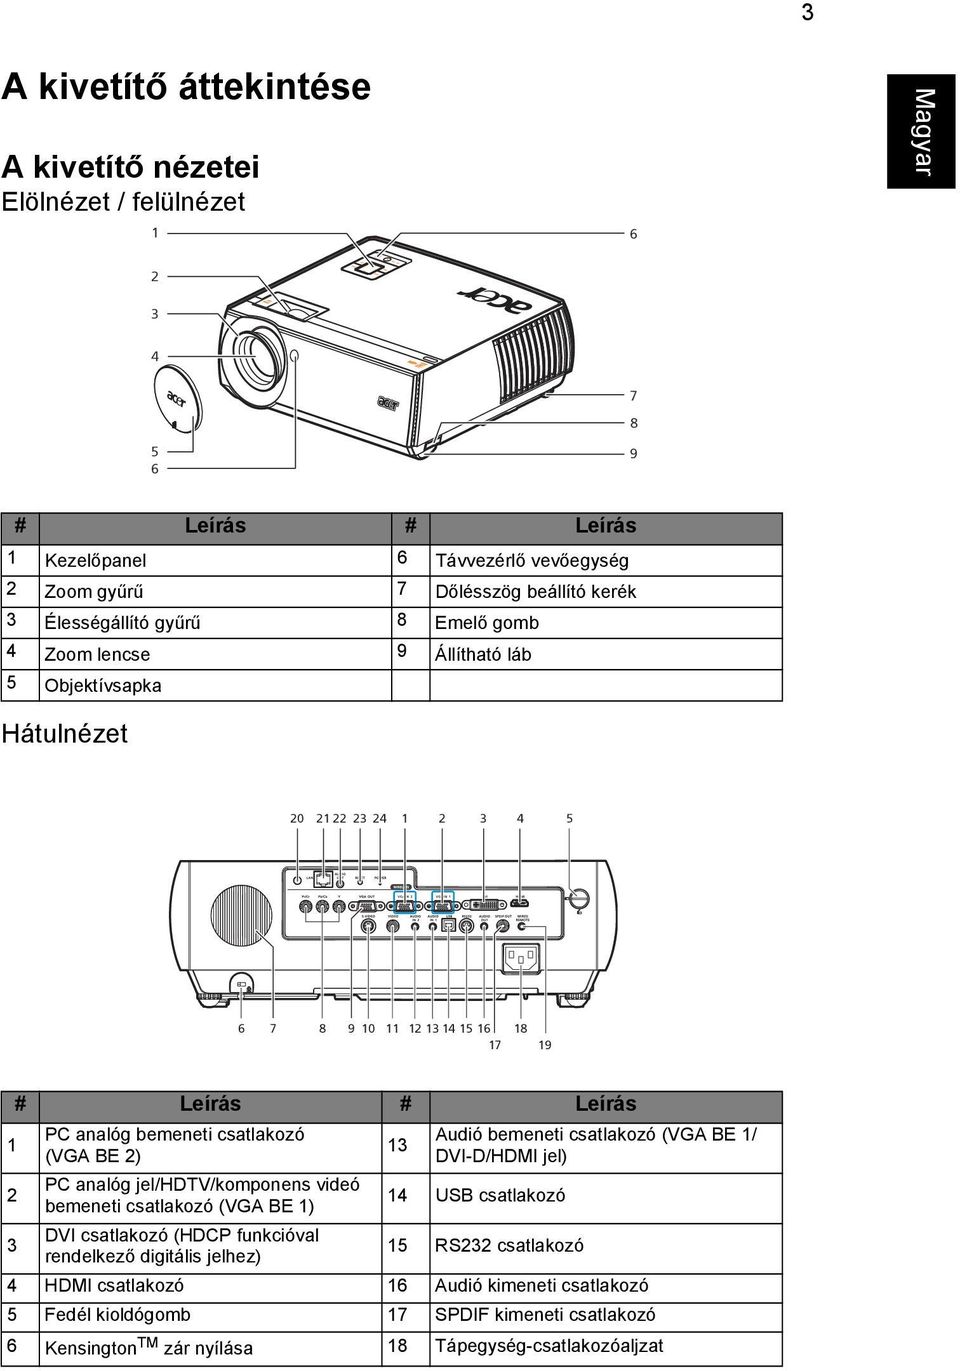 csatlakozó (VGA BE 2) PC analóg jel/hdtv/komponens videó bemeneti csatlakozó (VGA BE 1) 13 Audió bemeneti csatlakozó (VGA BE 1/ DVI-D/HDMI jel) 14 USB csatlakozó 3 DVI csatlakozó (HDCP